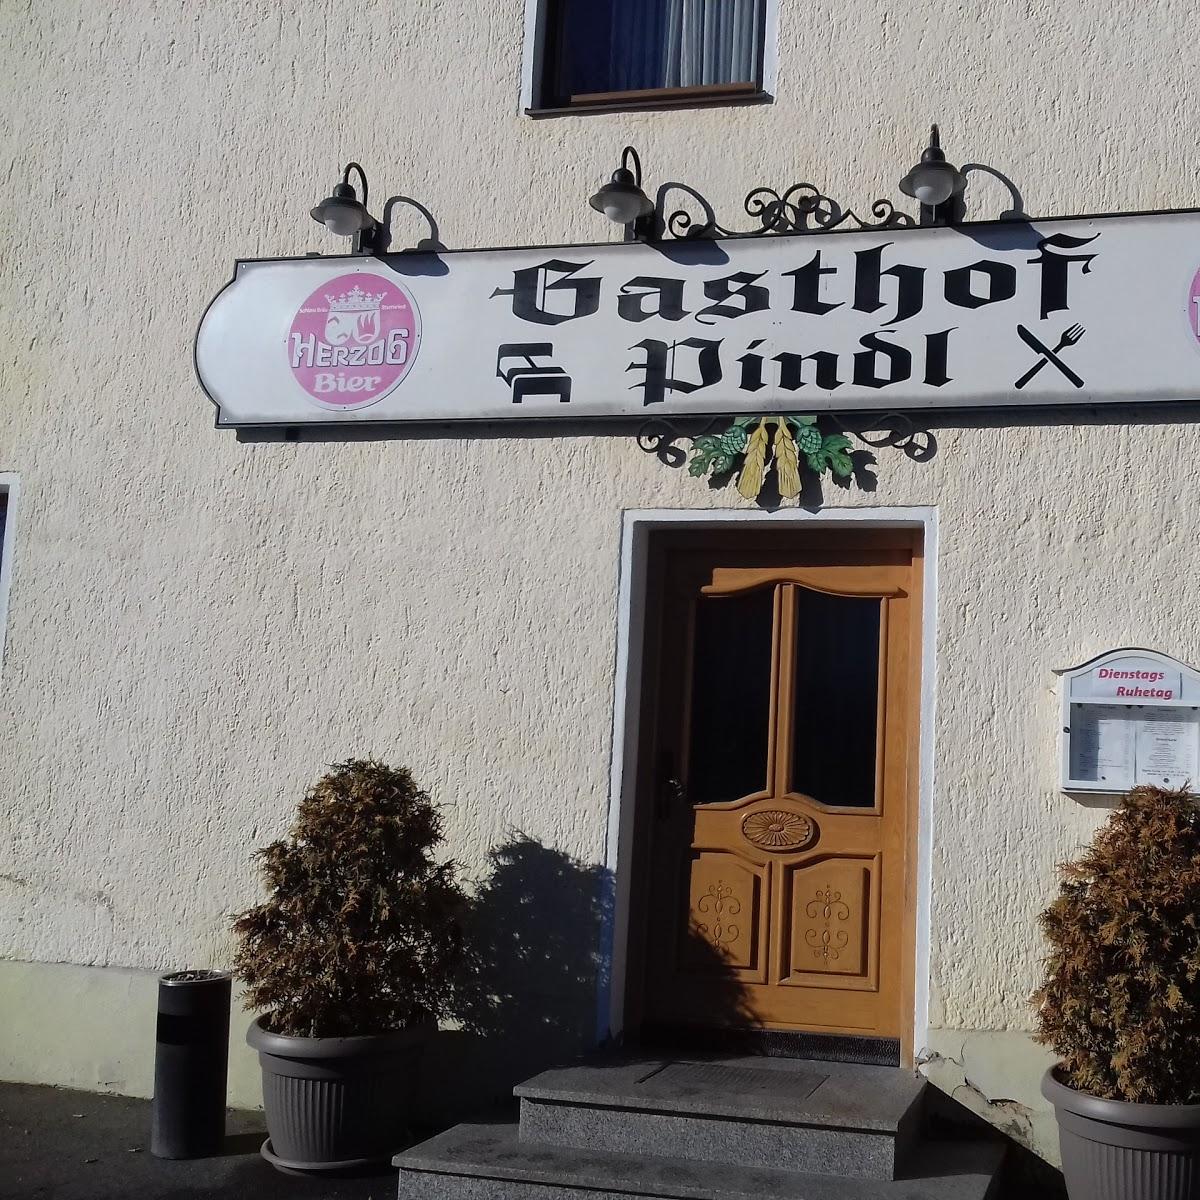 Restaurant "Landgasthof Pindl" in  Walderbach